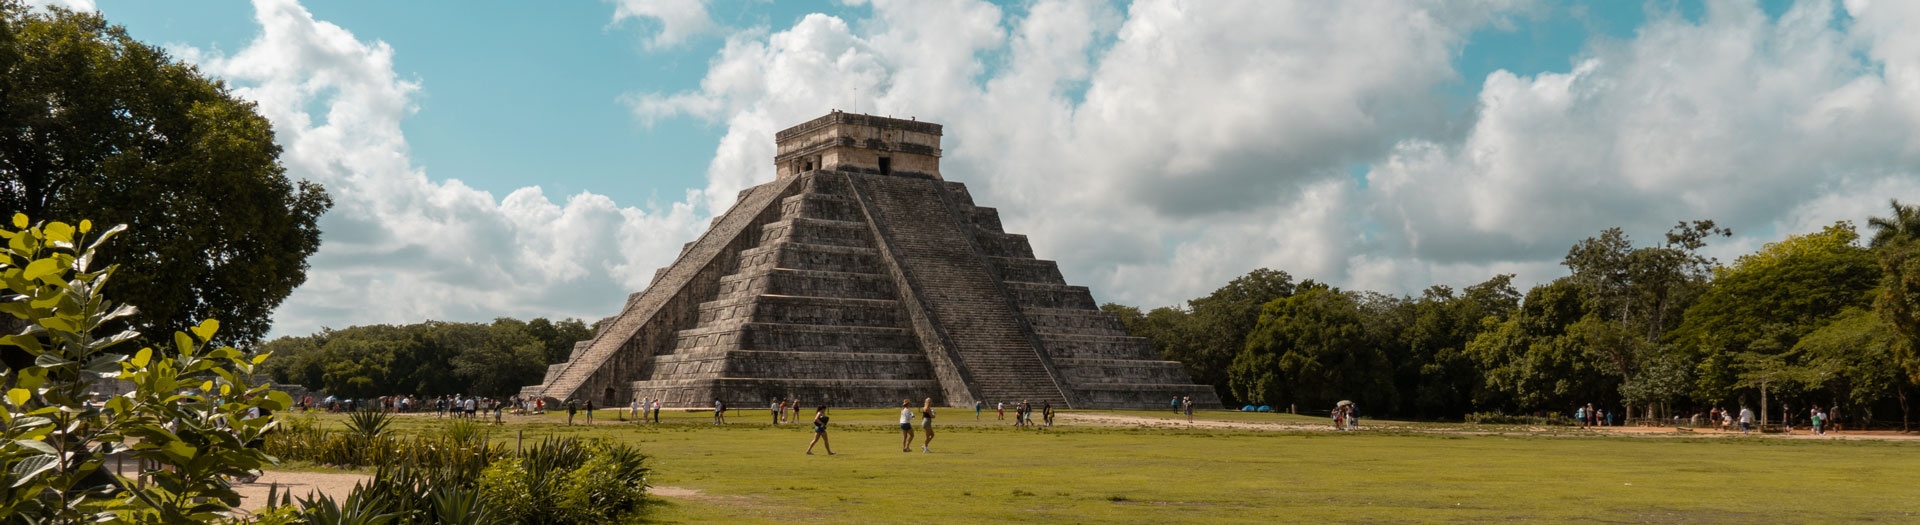 Inmersion en la cultura Maya